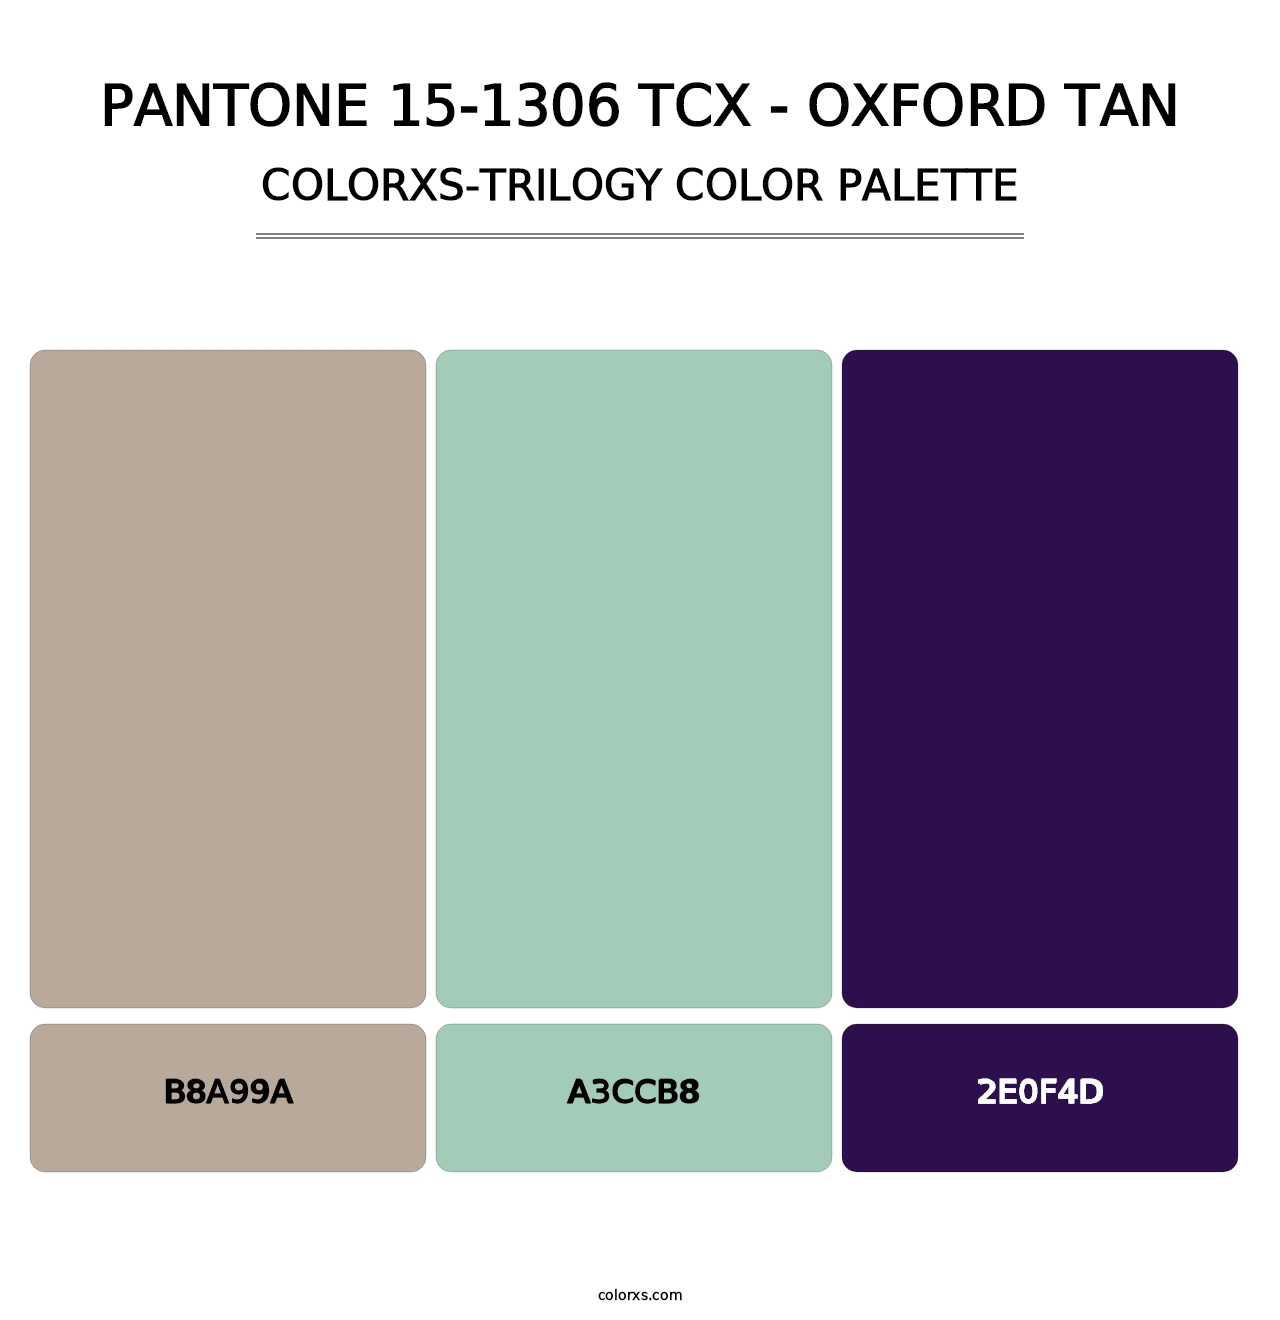 PANTONE 15-1306 TCX - Oxford Tan - Colorxs Trilogy Palette